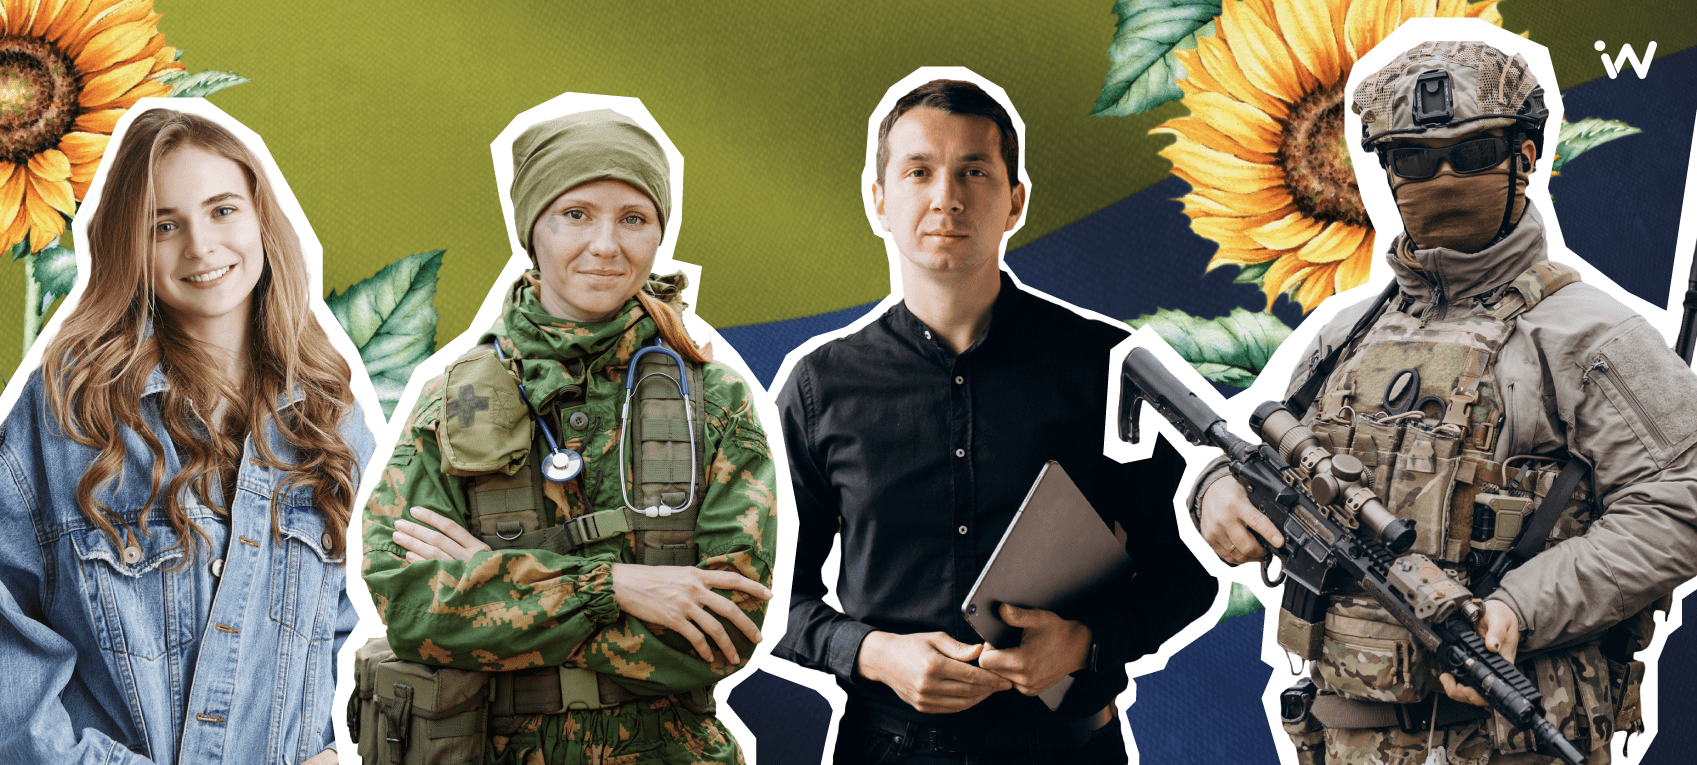 Украинский клуб: правила коммуникации во время войны